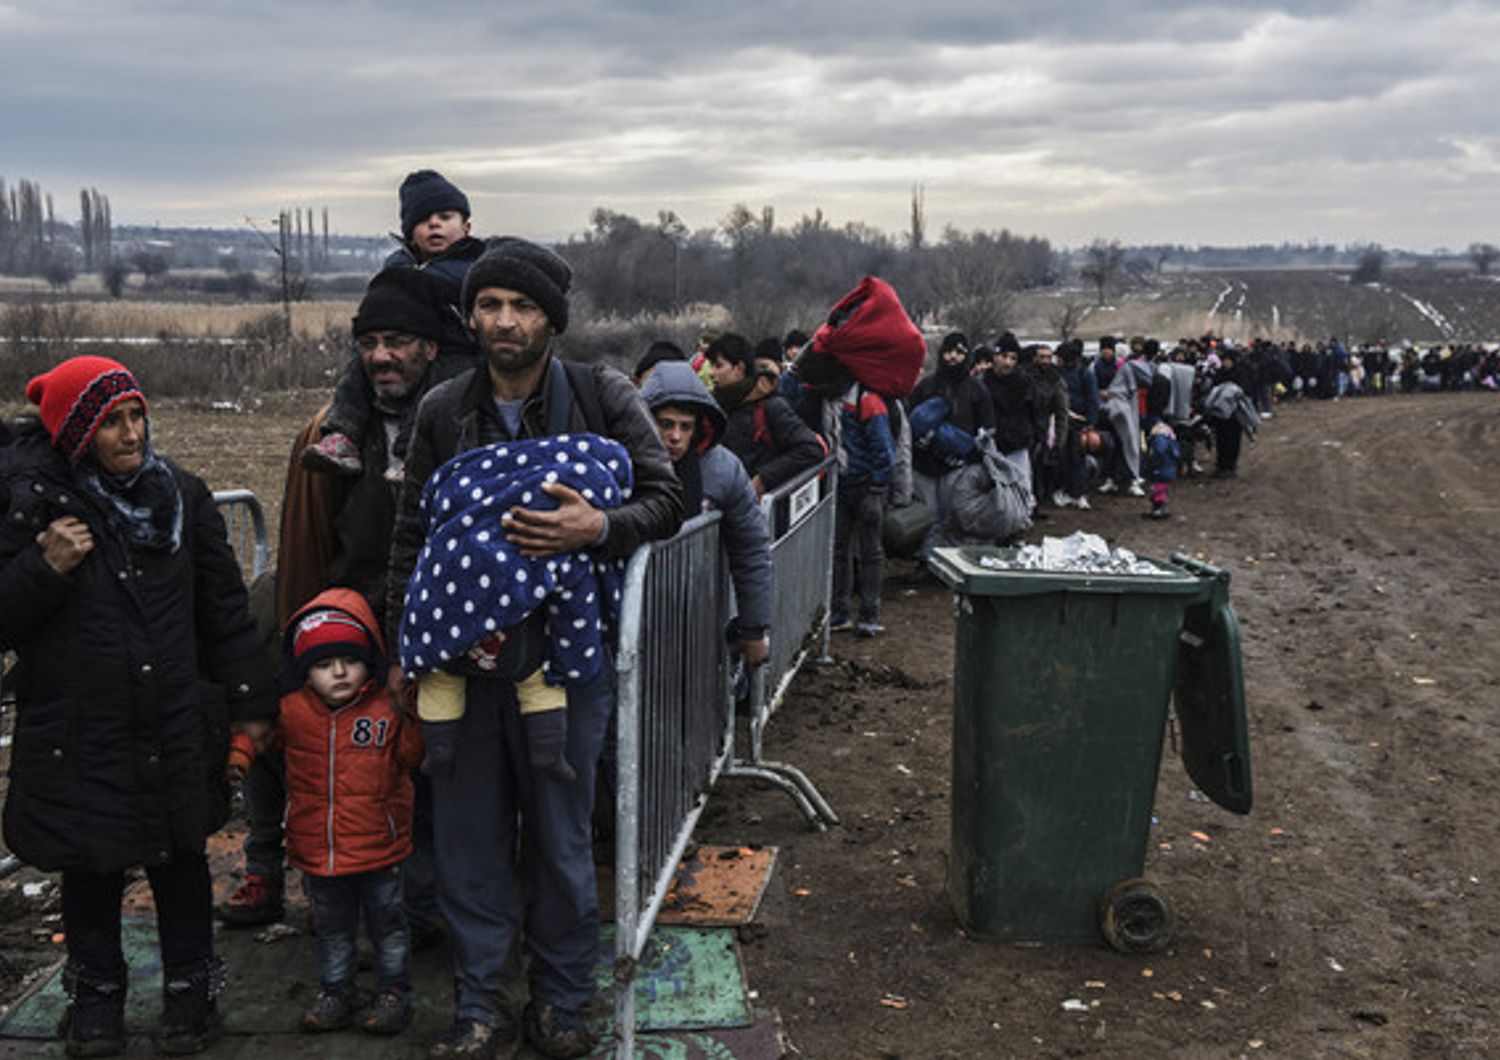 Migranti e rifugiati al controllo di sicurezza dopo aver attraversato il confine con la Macedonia in Serbia, vicino al villaggio di Miratovac. Pi&ugrave; di 1 milione di persone provenienti da paesi come la Siria, l'Iraq o Afghanistan sono entrati in Europa l'anno scorso in quella che &egrave; stata definita la pi&ugrave; grande migrazione verso il continente dalla seconda guerra mondiale (26 gennaio 2016)  (foto Afp)&nbsp;